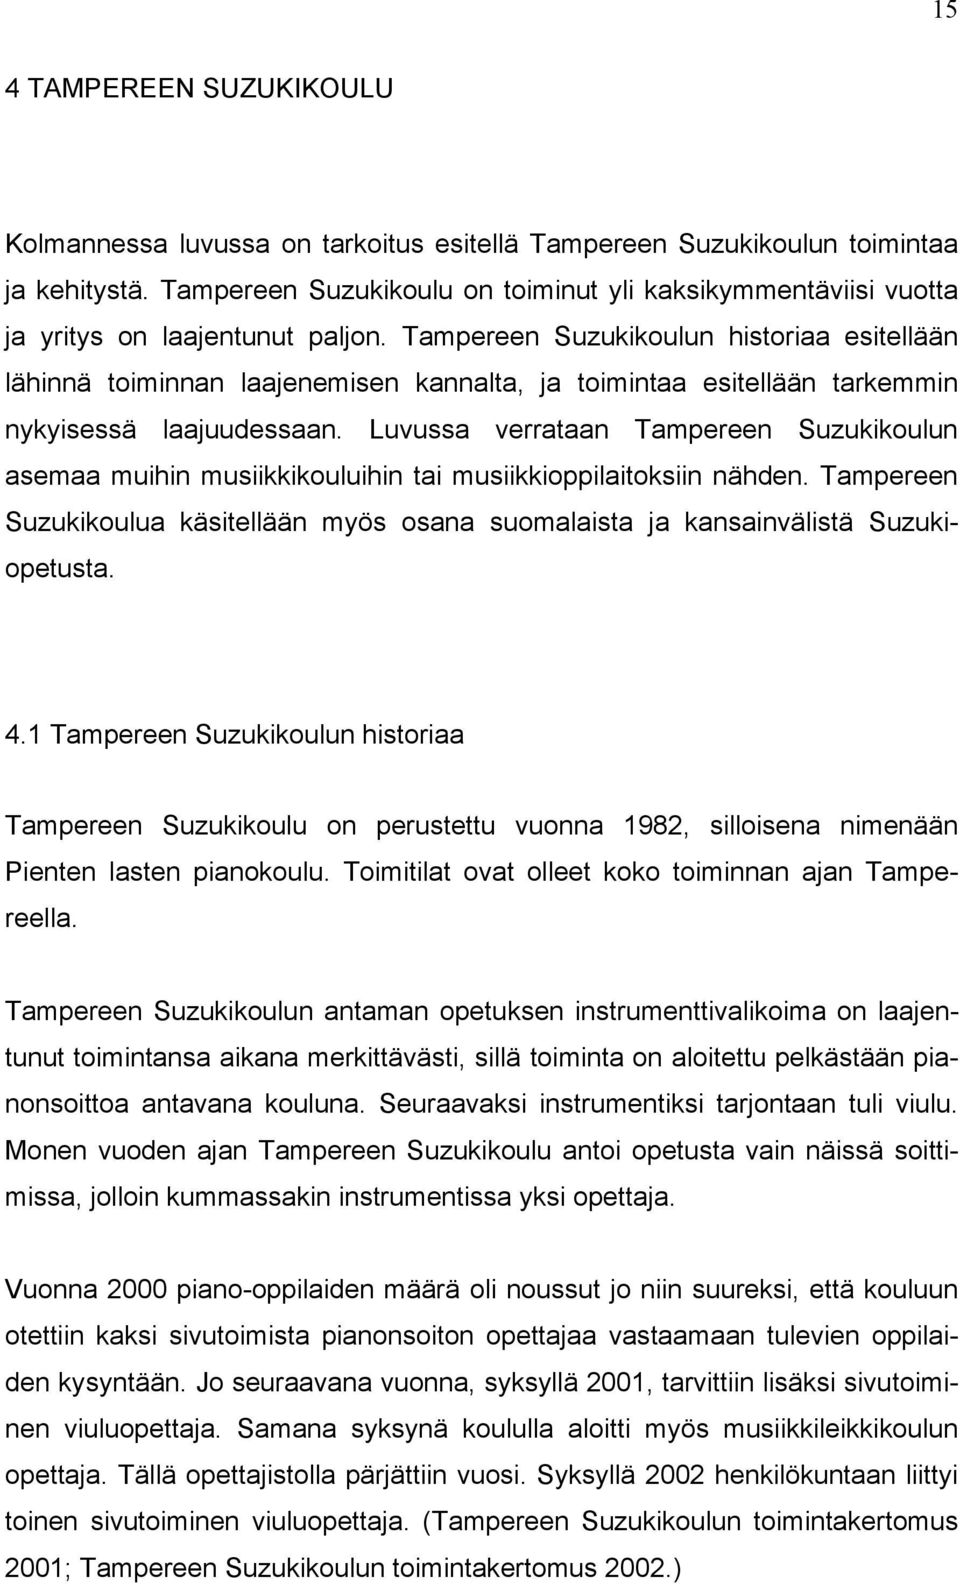 Tampereen Suzukikoulun historiaa esitellään lähinnä toiminnan laajenemisen kannalta, ja toimintaa esitellään tarkemmin nykyisessä laajuudessaan.